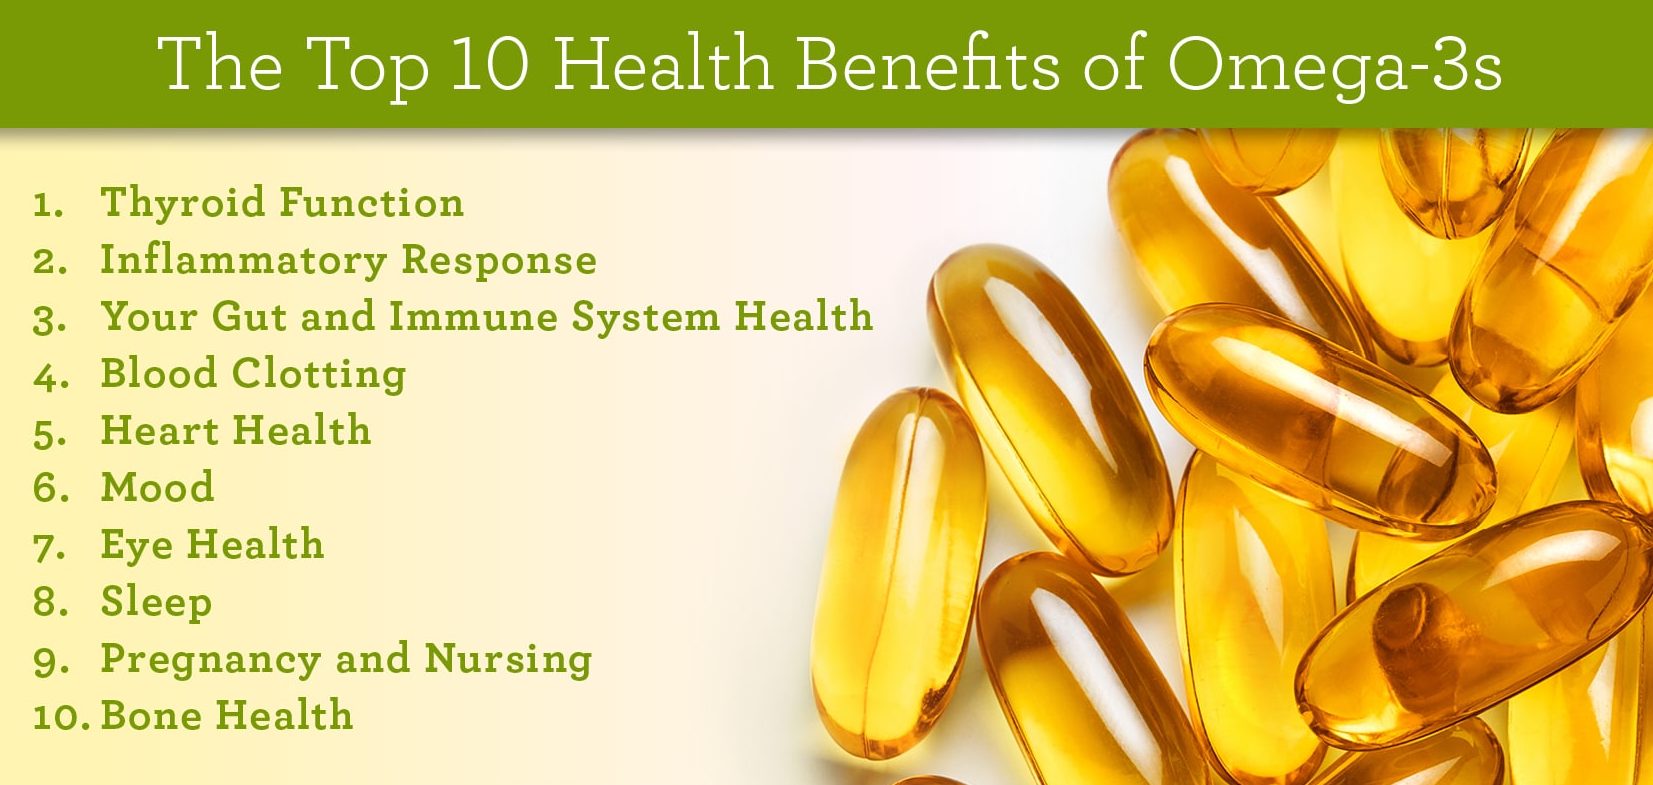 Omega-3 Benefits